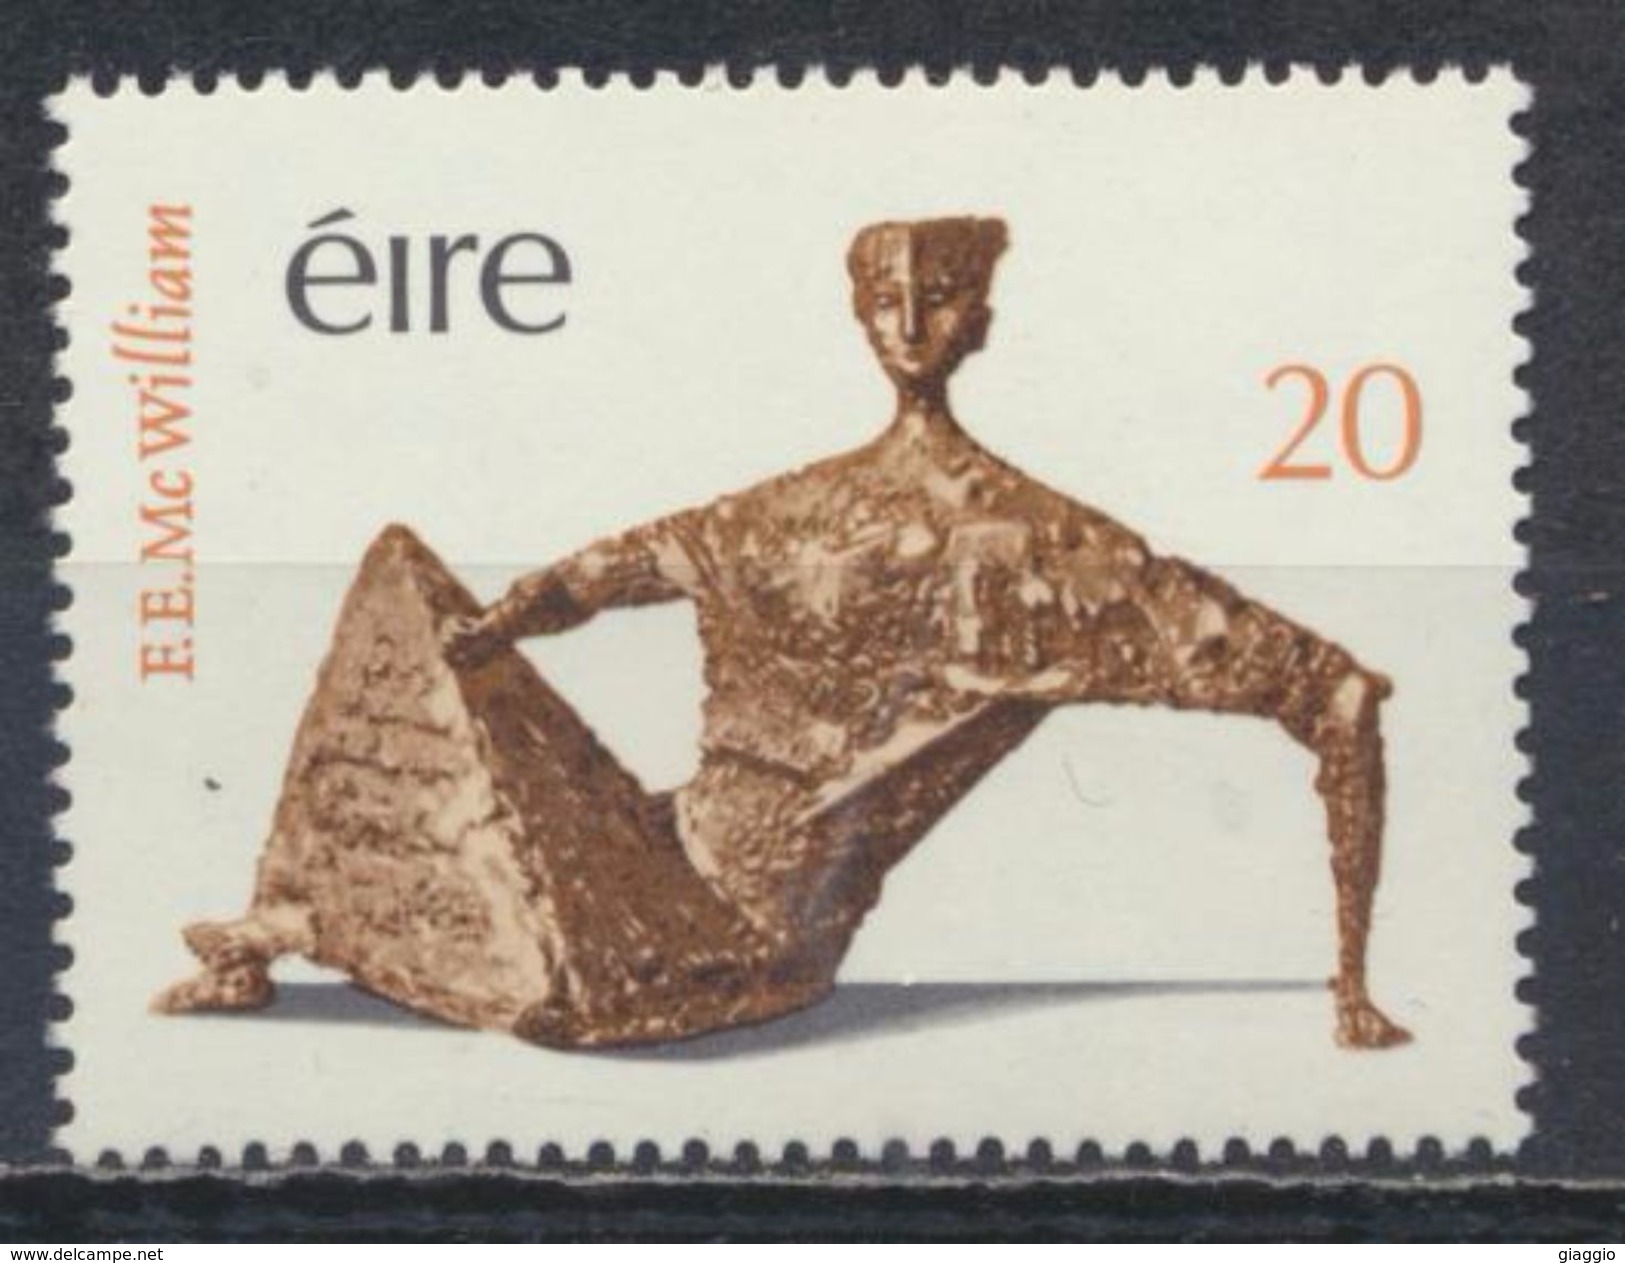 °°° IRLANDA EIRE - Y&T N°408 - 1979 MNH °°° - Unused Stamps